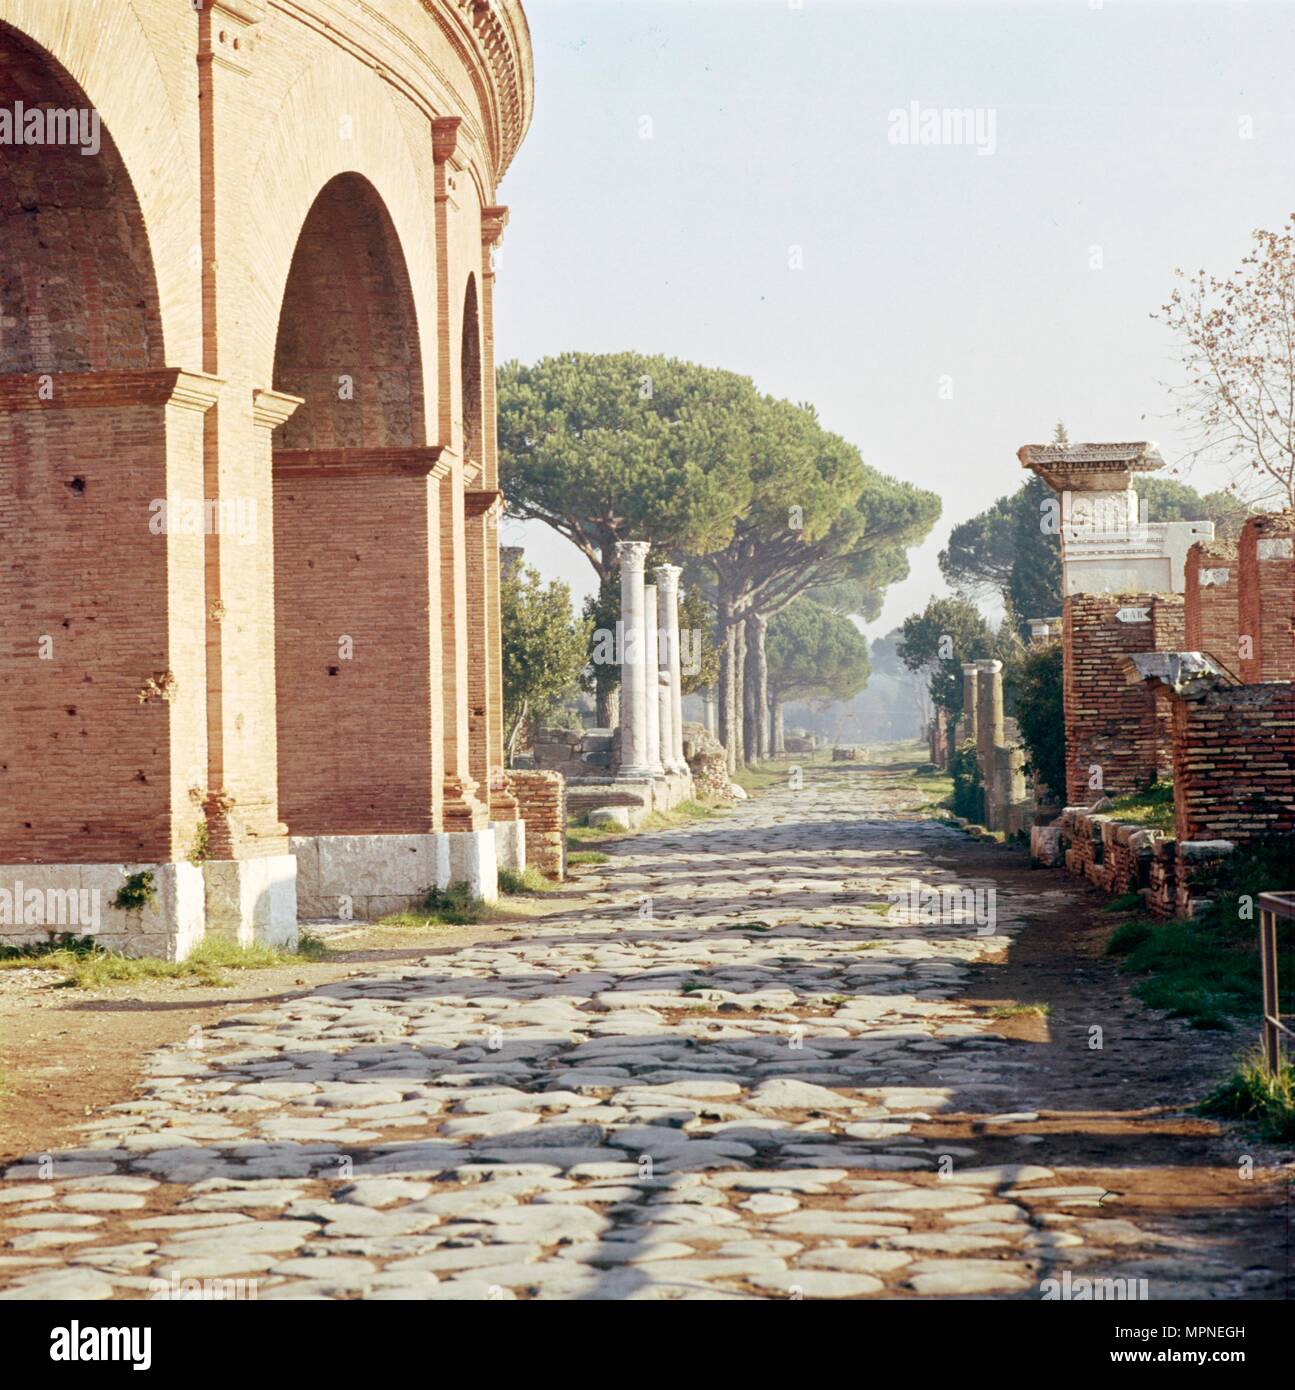 Via Decumanus, Ostia Antica, Port of Rome, Italy, c2nd-3rd century, (c20th century).  Artist: CM Dixon. Stock Photo